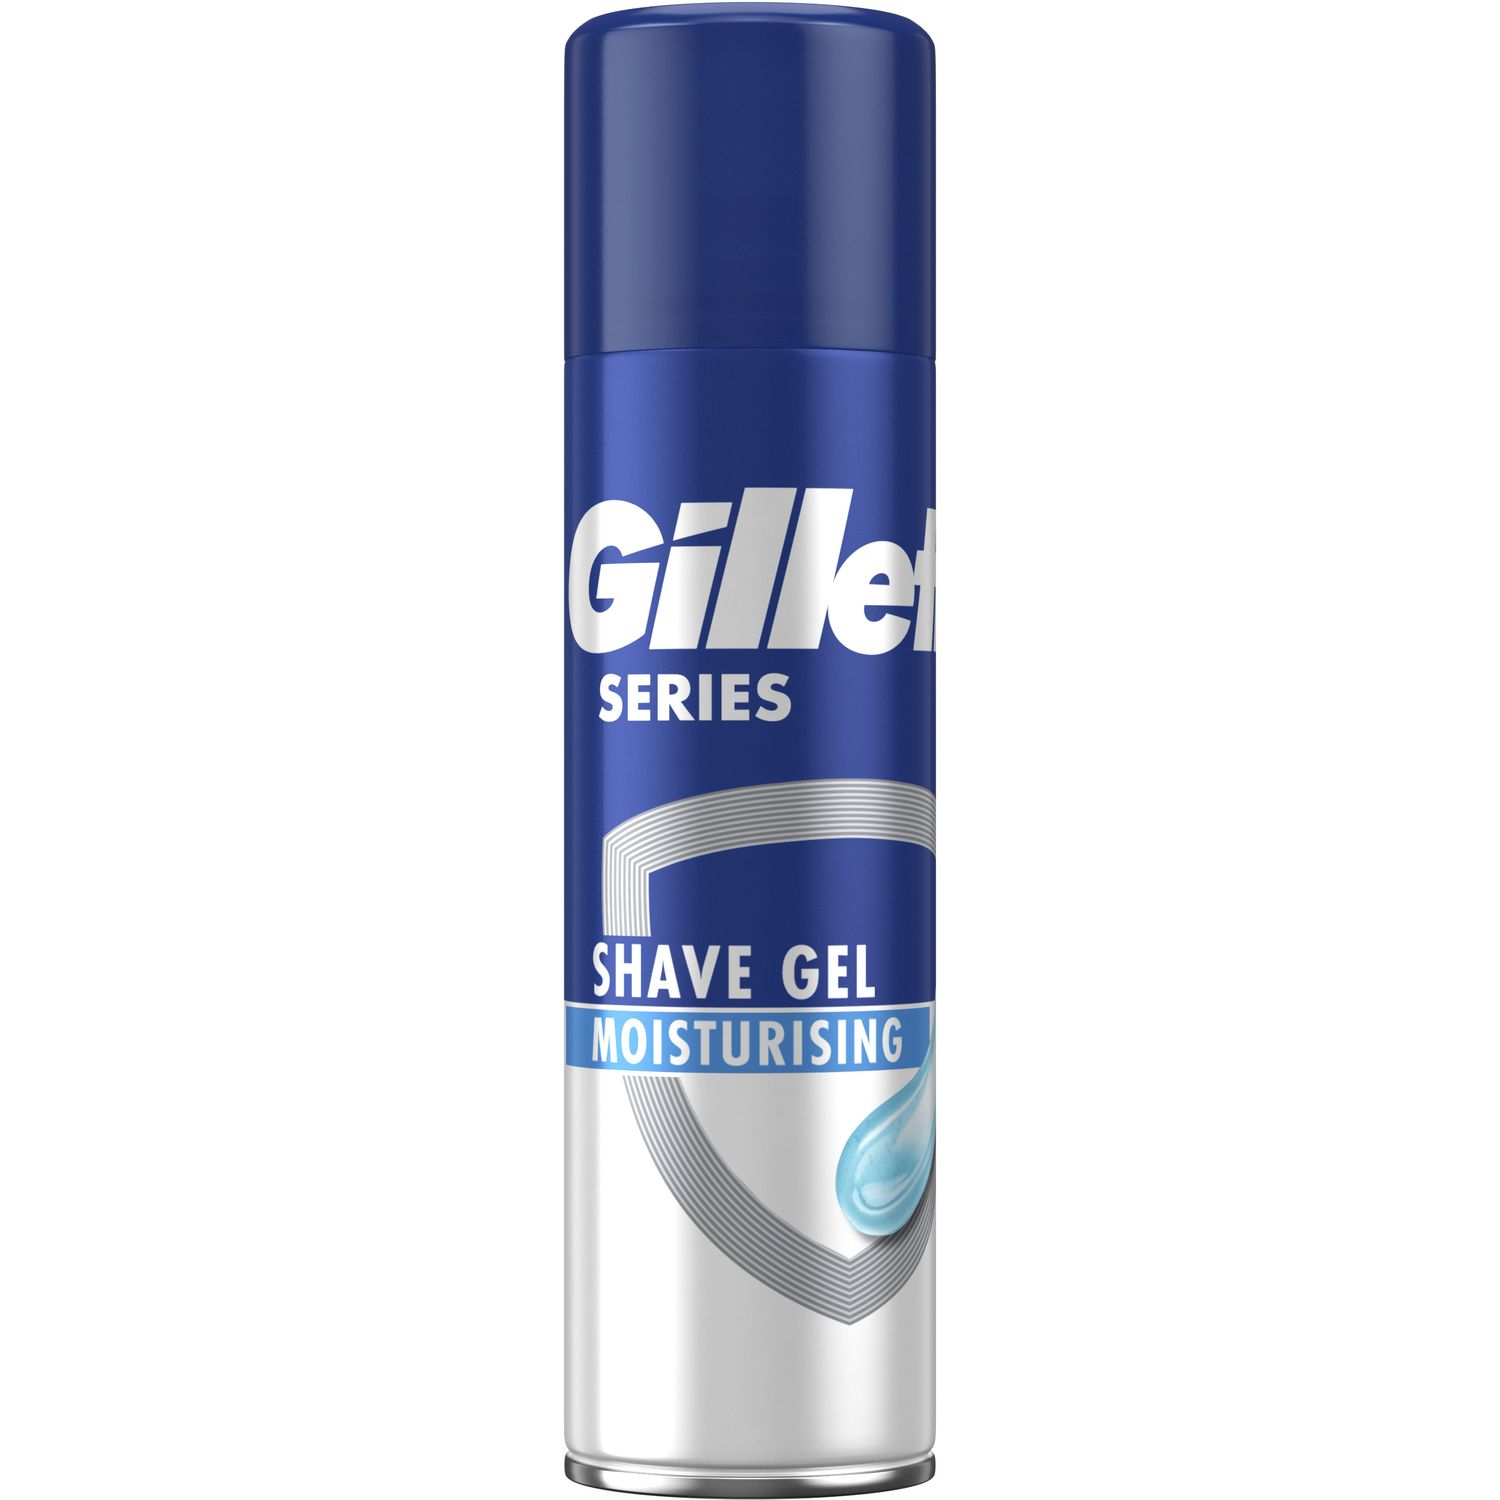 Зволожуючий гель для гоління Gillette Series Moisturizing, 200 мл - фото 1